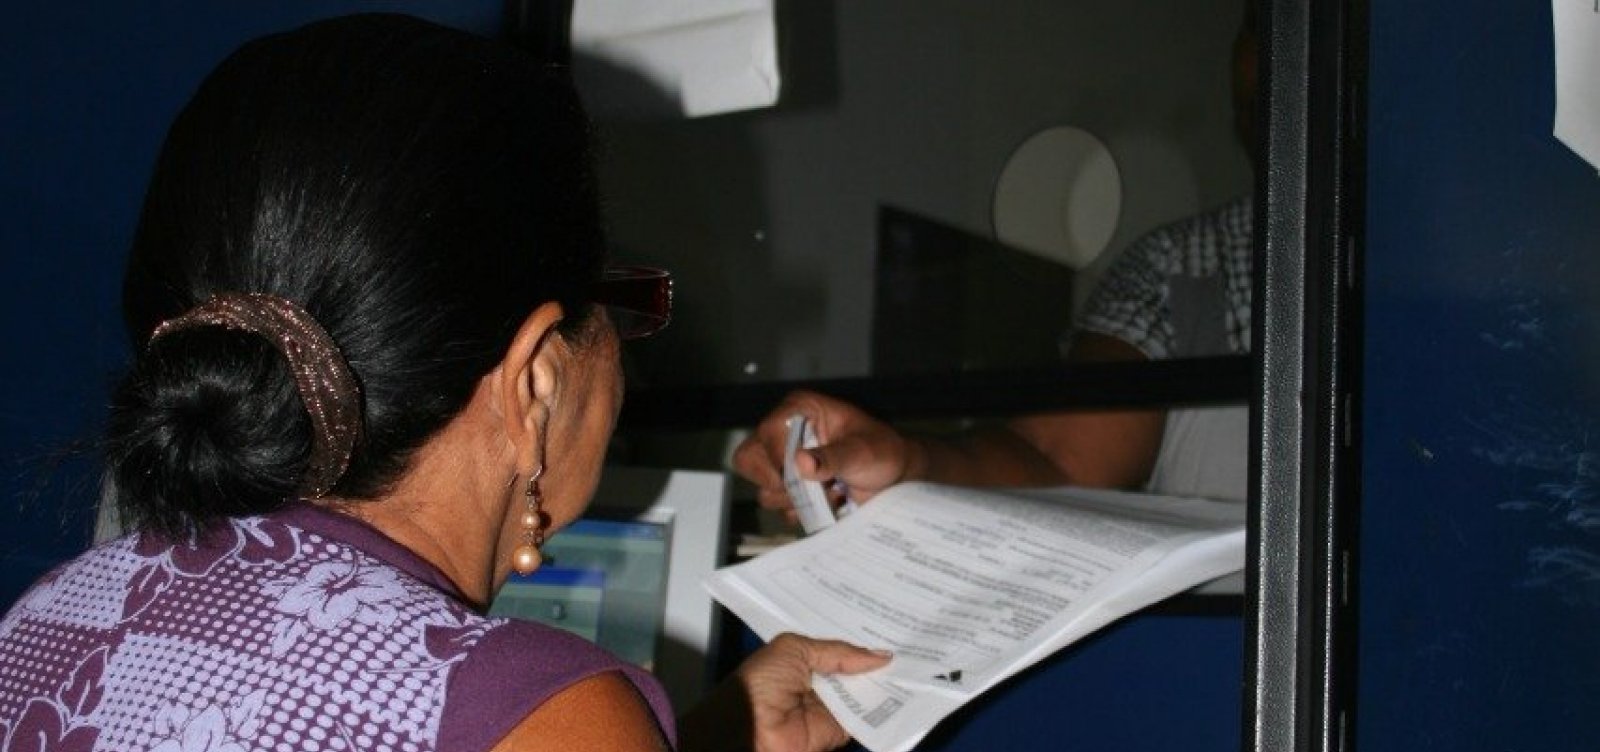 Registrar compra de imóvel em Salvador pode levar até três anos por causa da burocracia nos cartórios